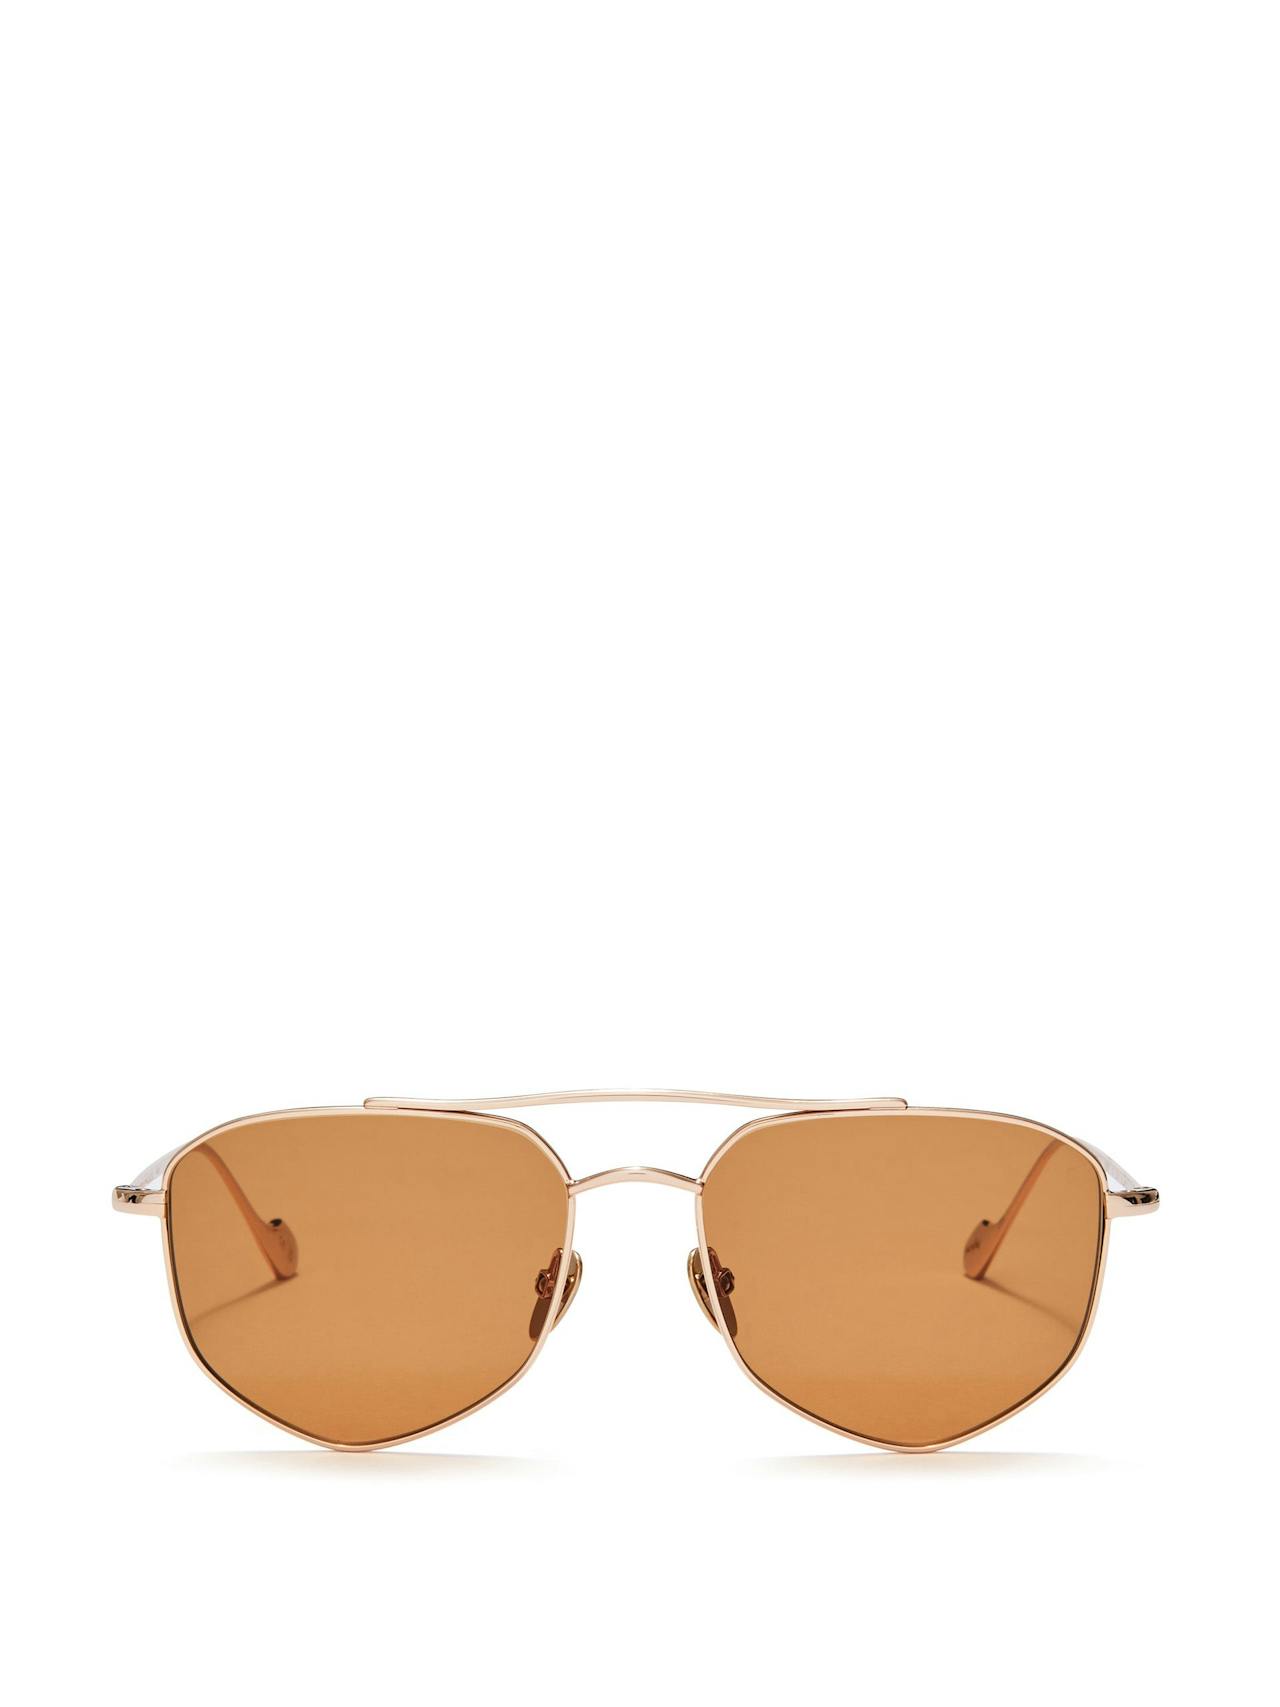 Brown Andrea sunglasses